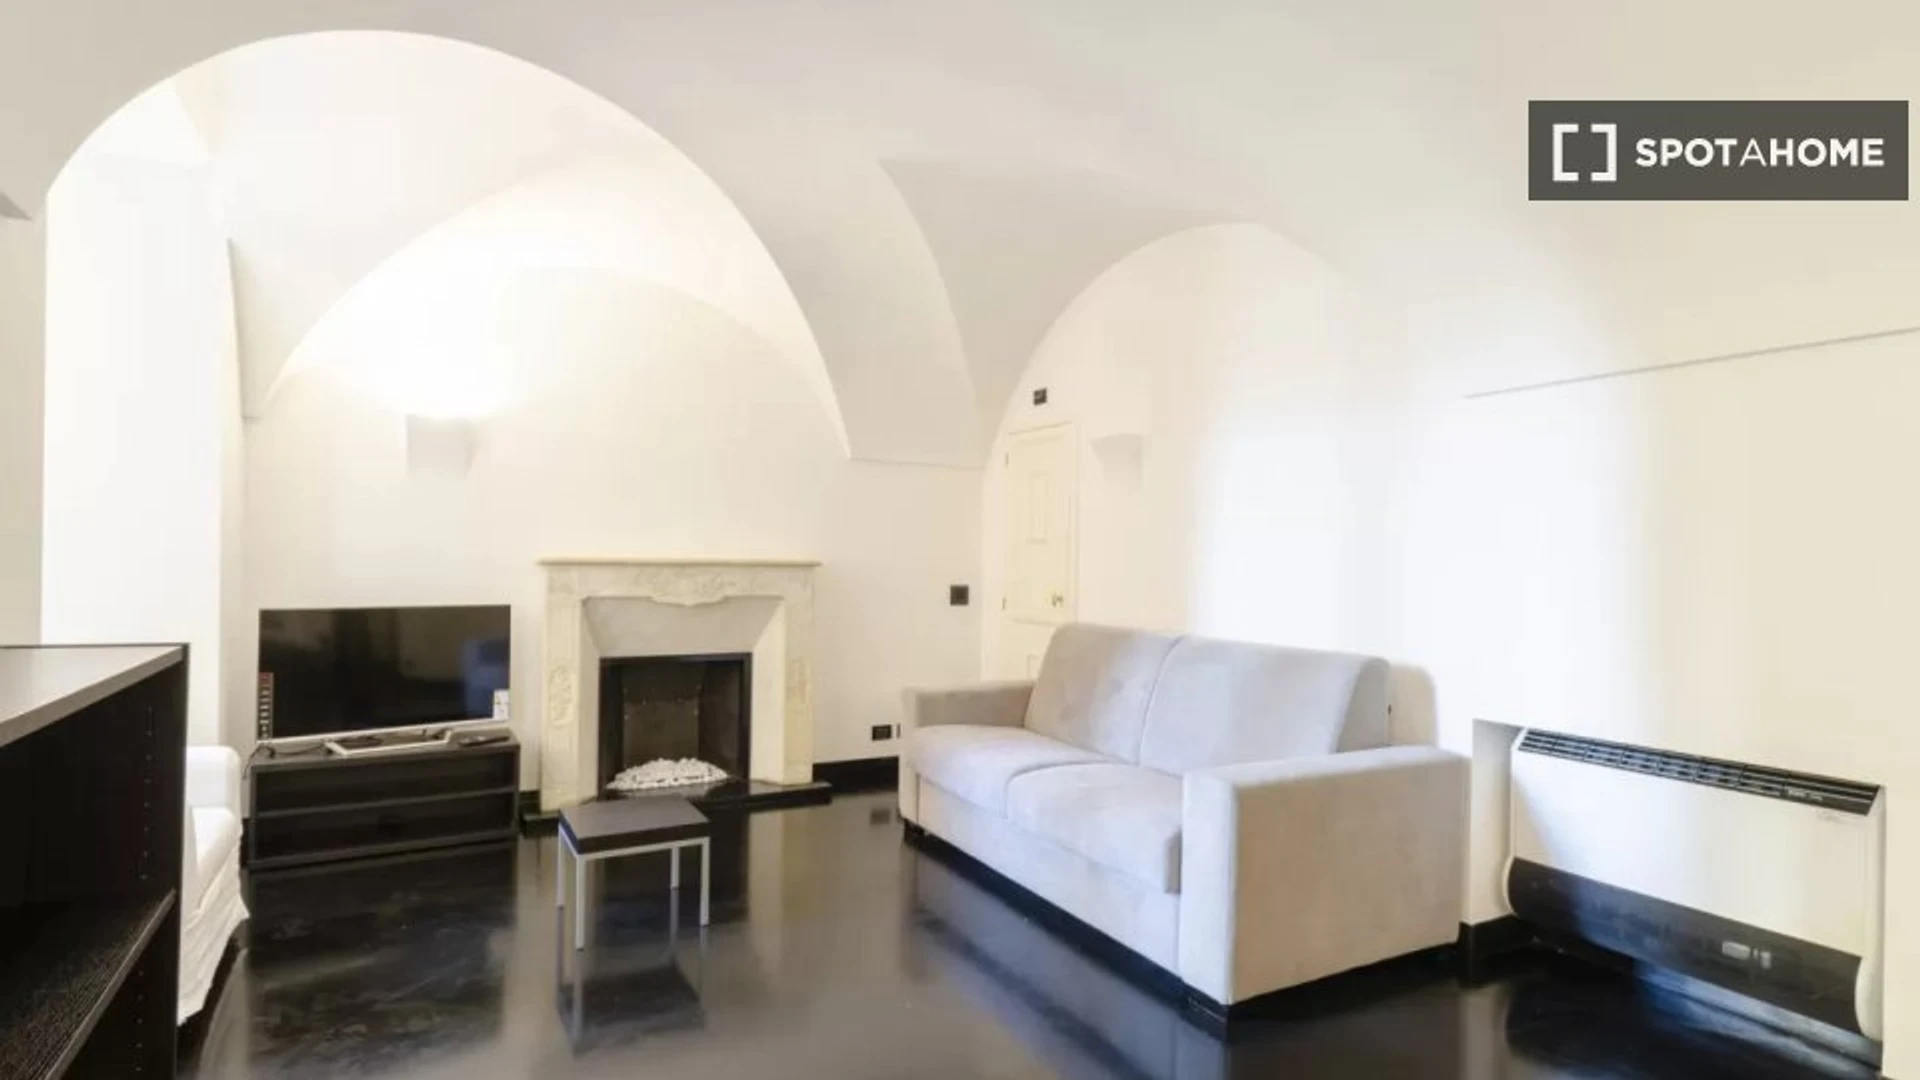 Appartamento completamente ristrutturato a Genova